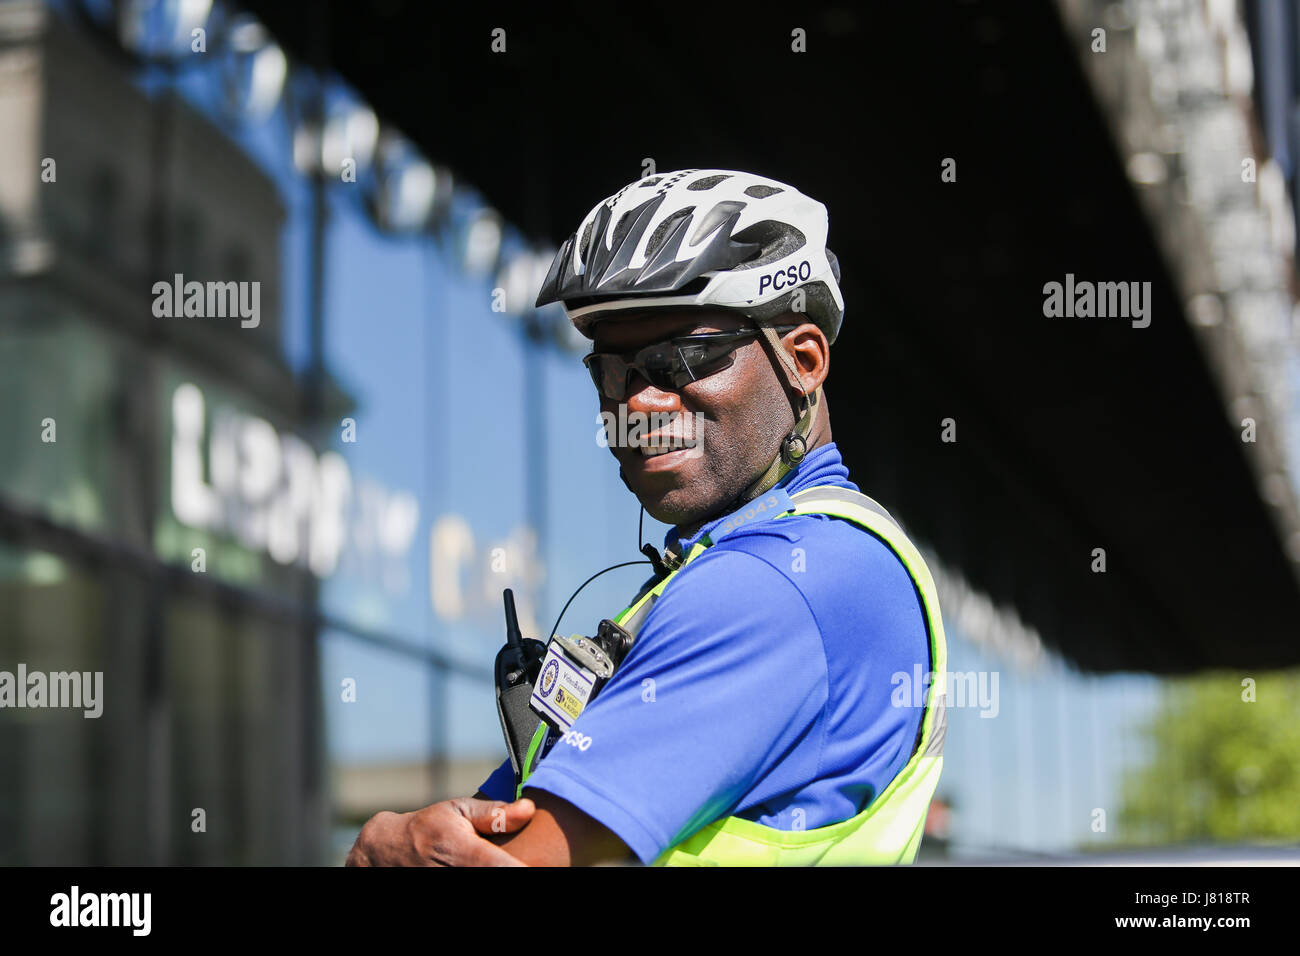 Polizia PCSO support officer indossando il casco del ciclo di servizio Foto Stock